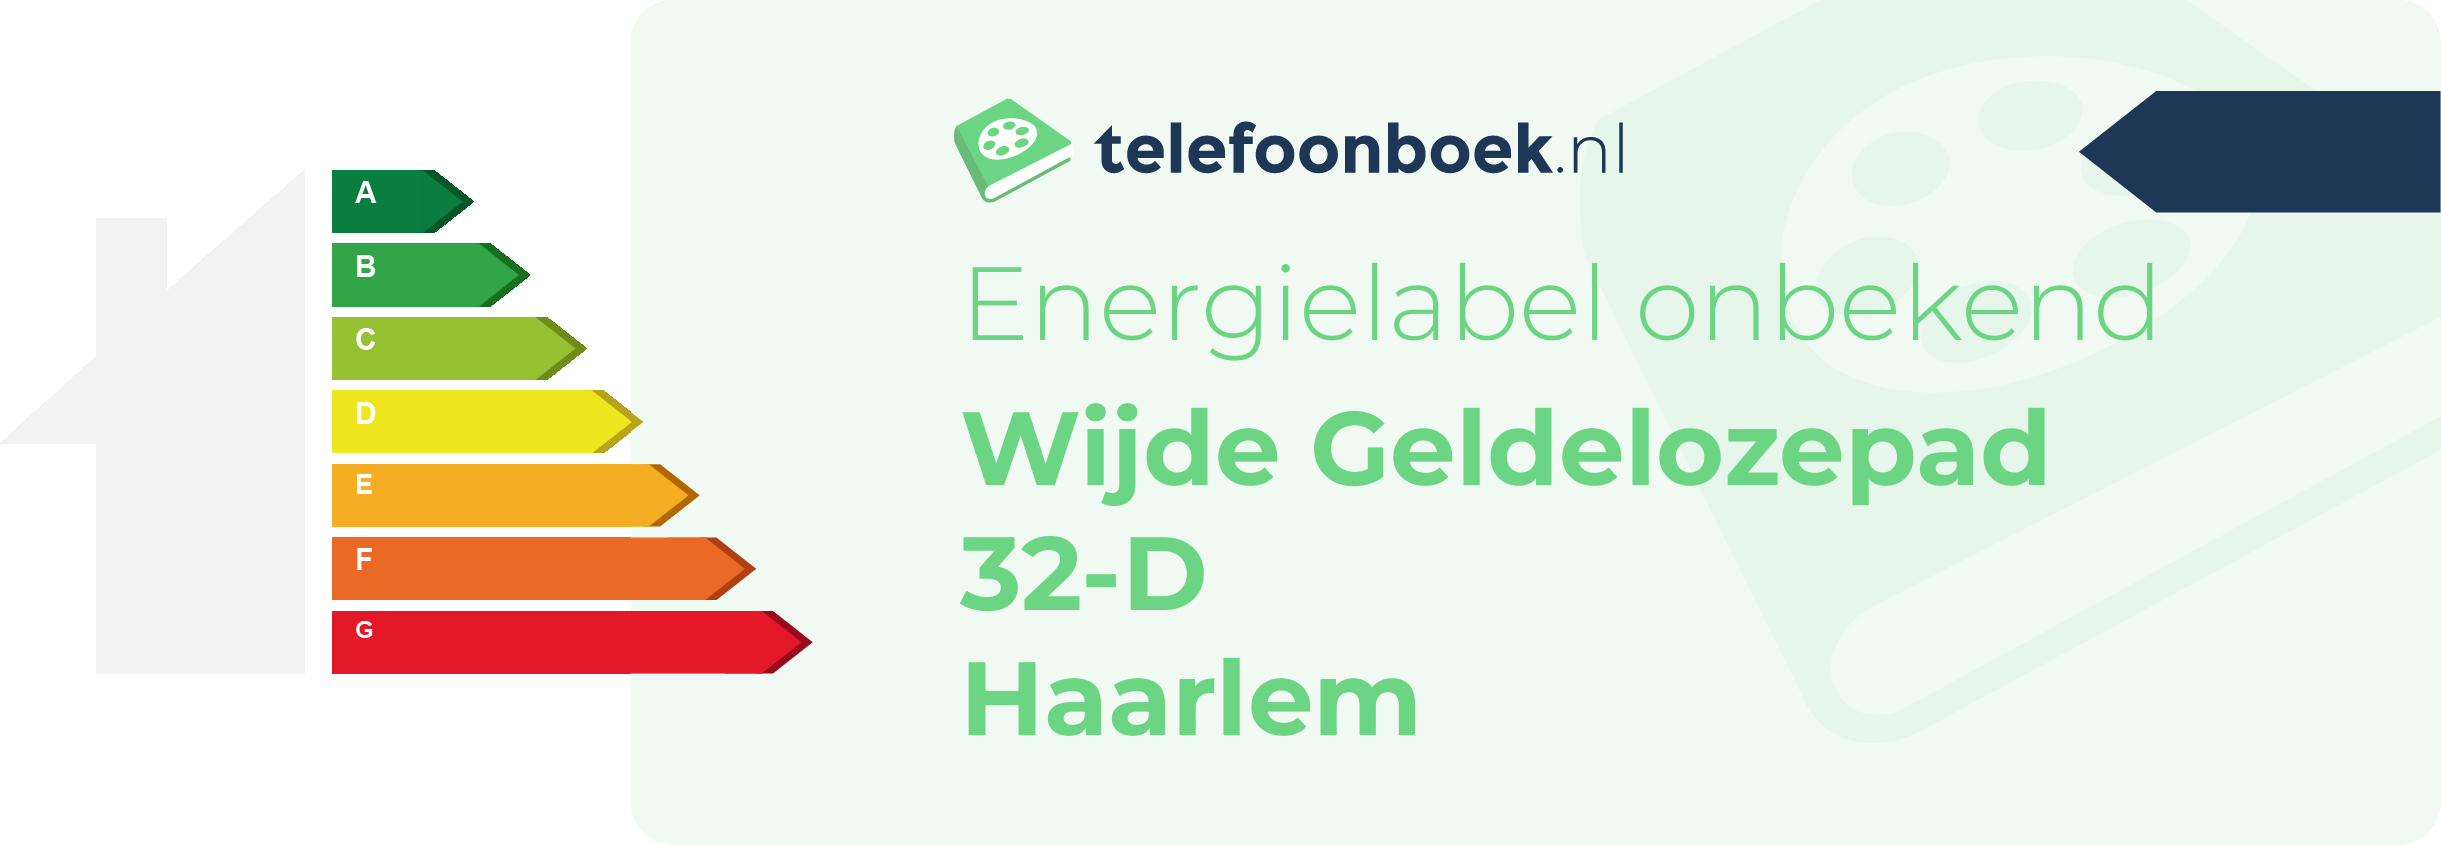 Energielabel Wijde Geldelozepad 32-D Haarlem